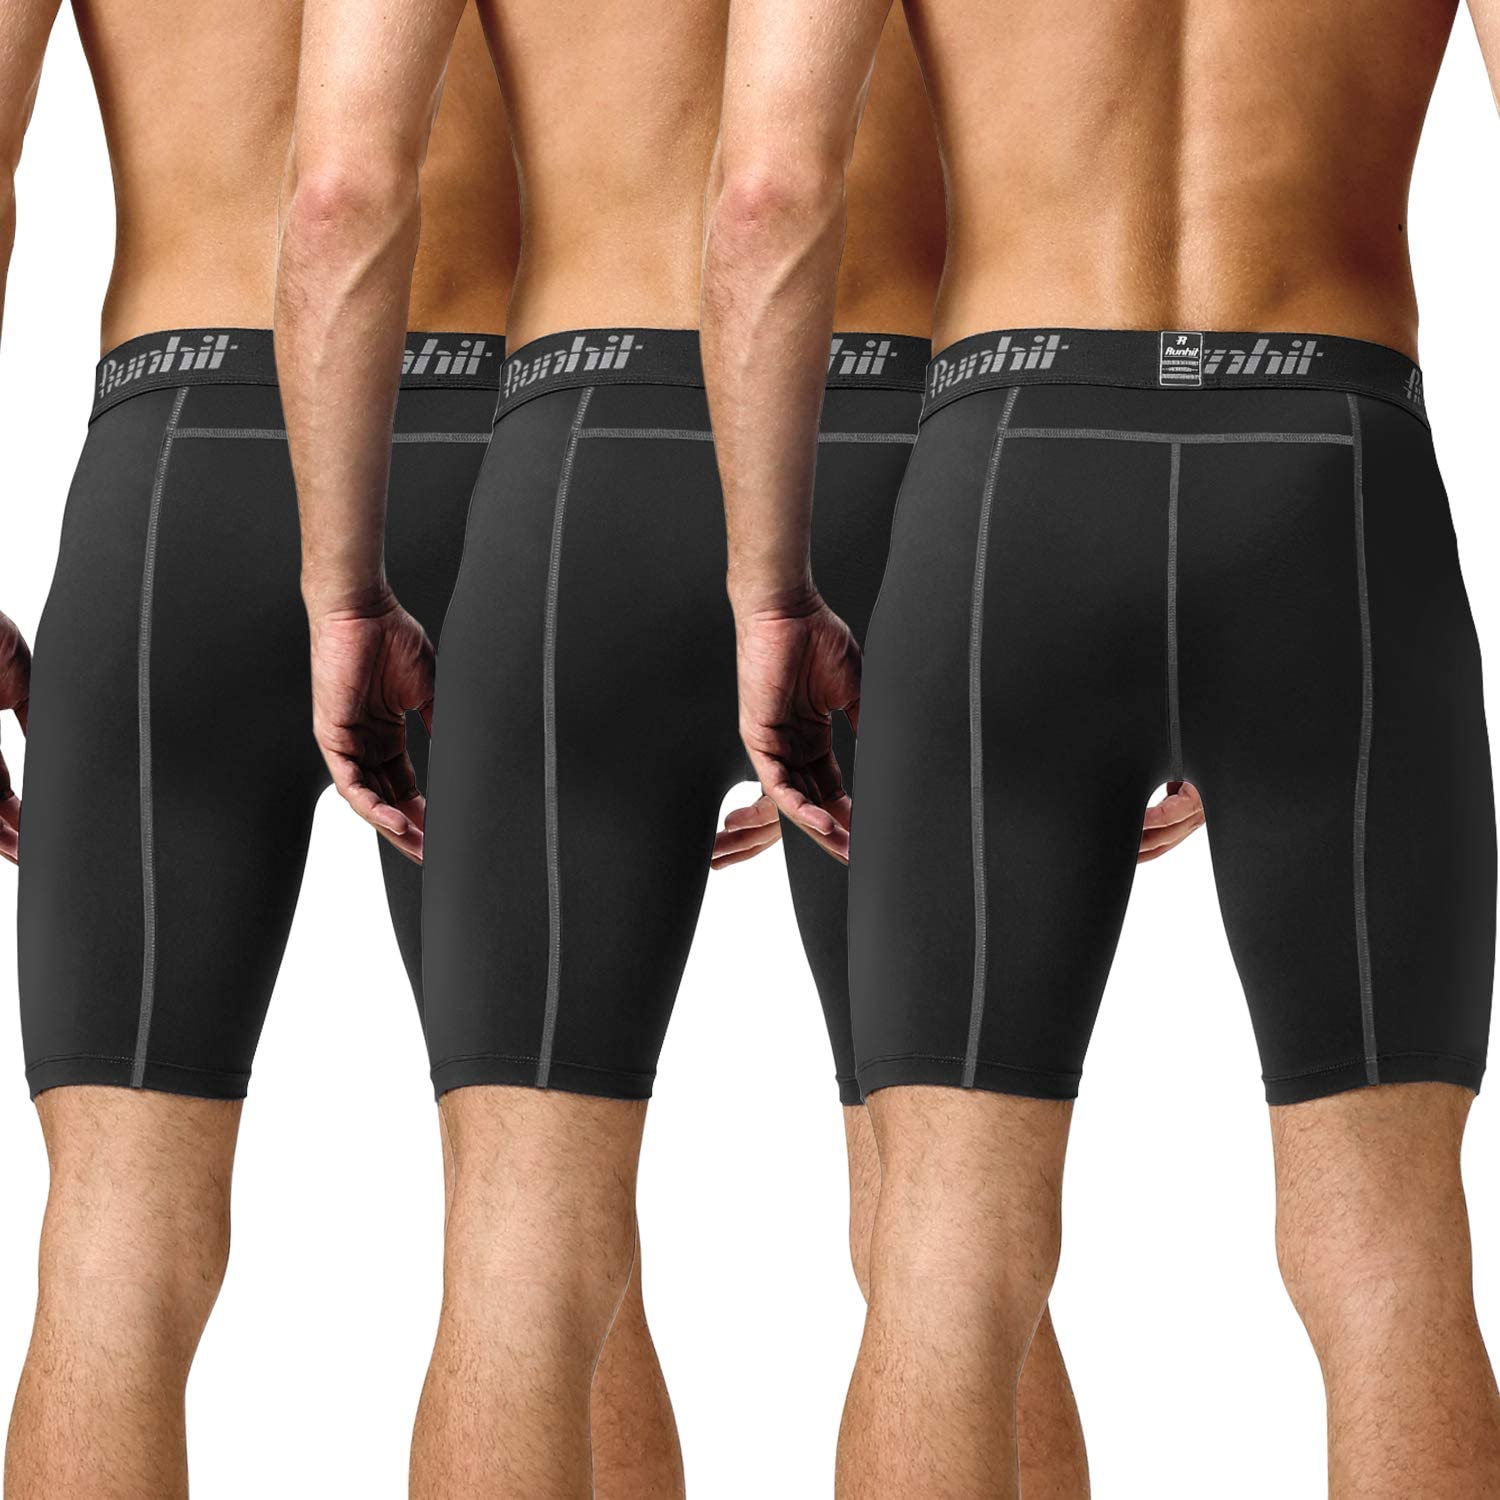 Runhit Compression Shorts For Men Mens Underwear Spandex Shorts Workout Running Ebay